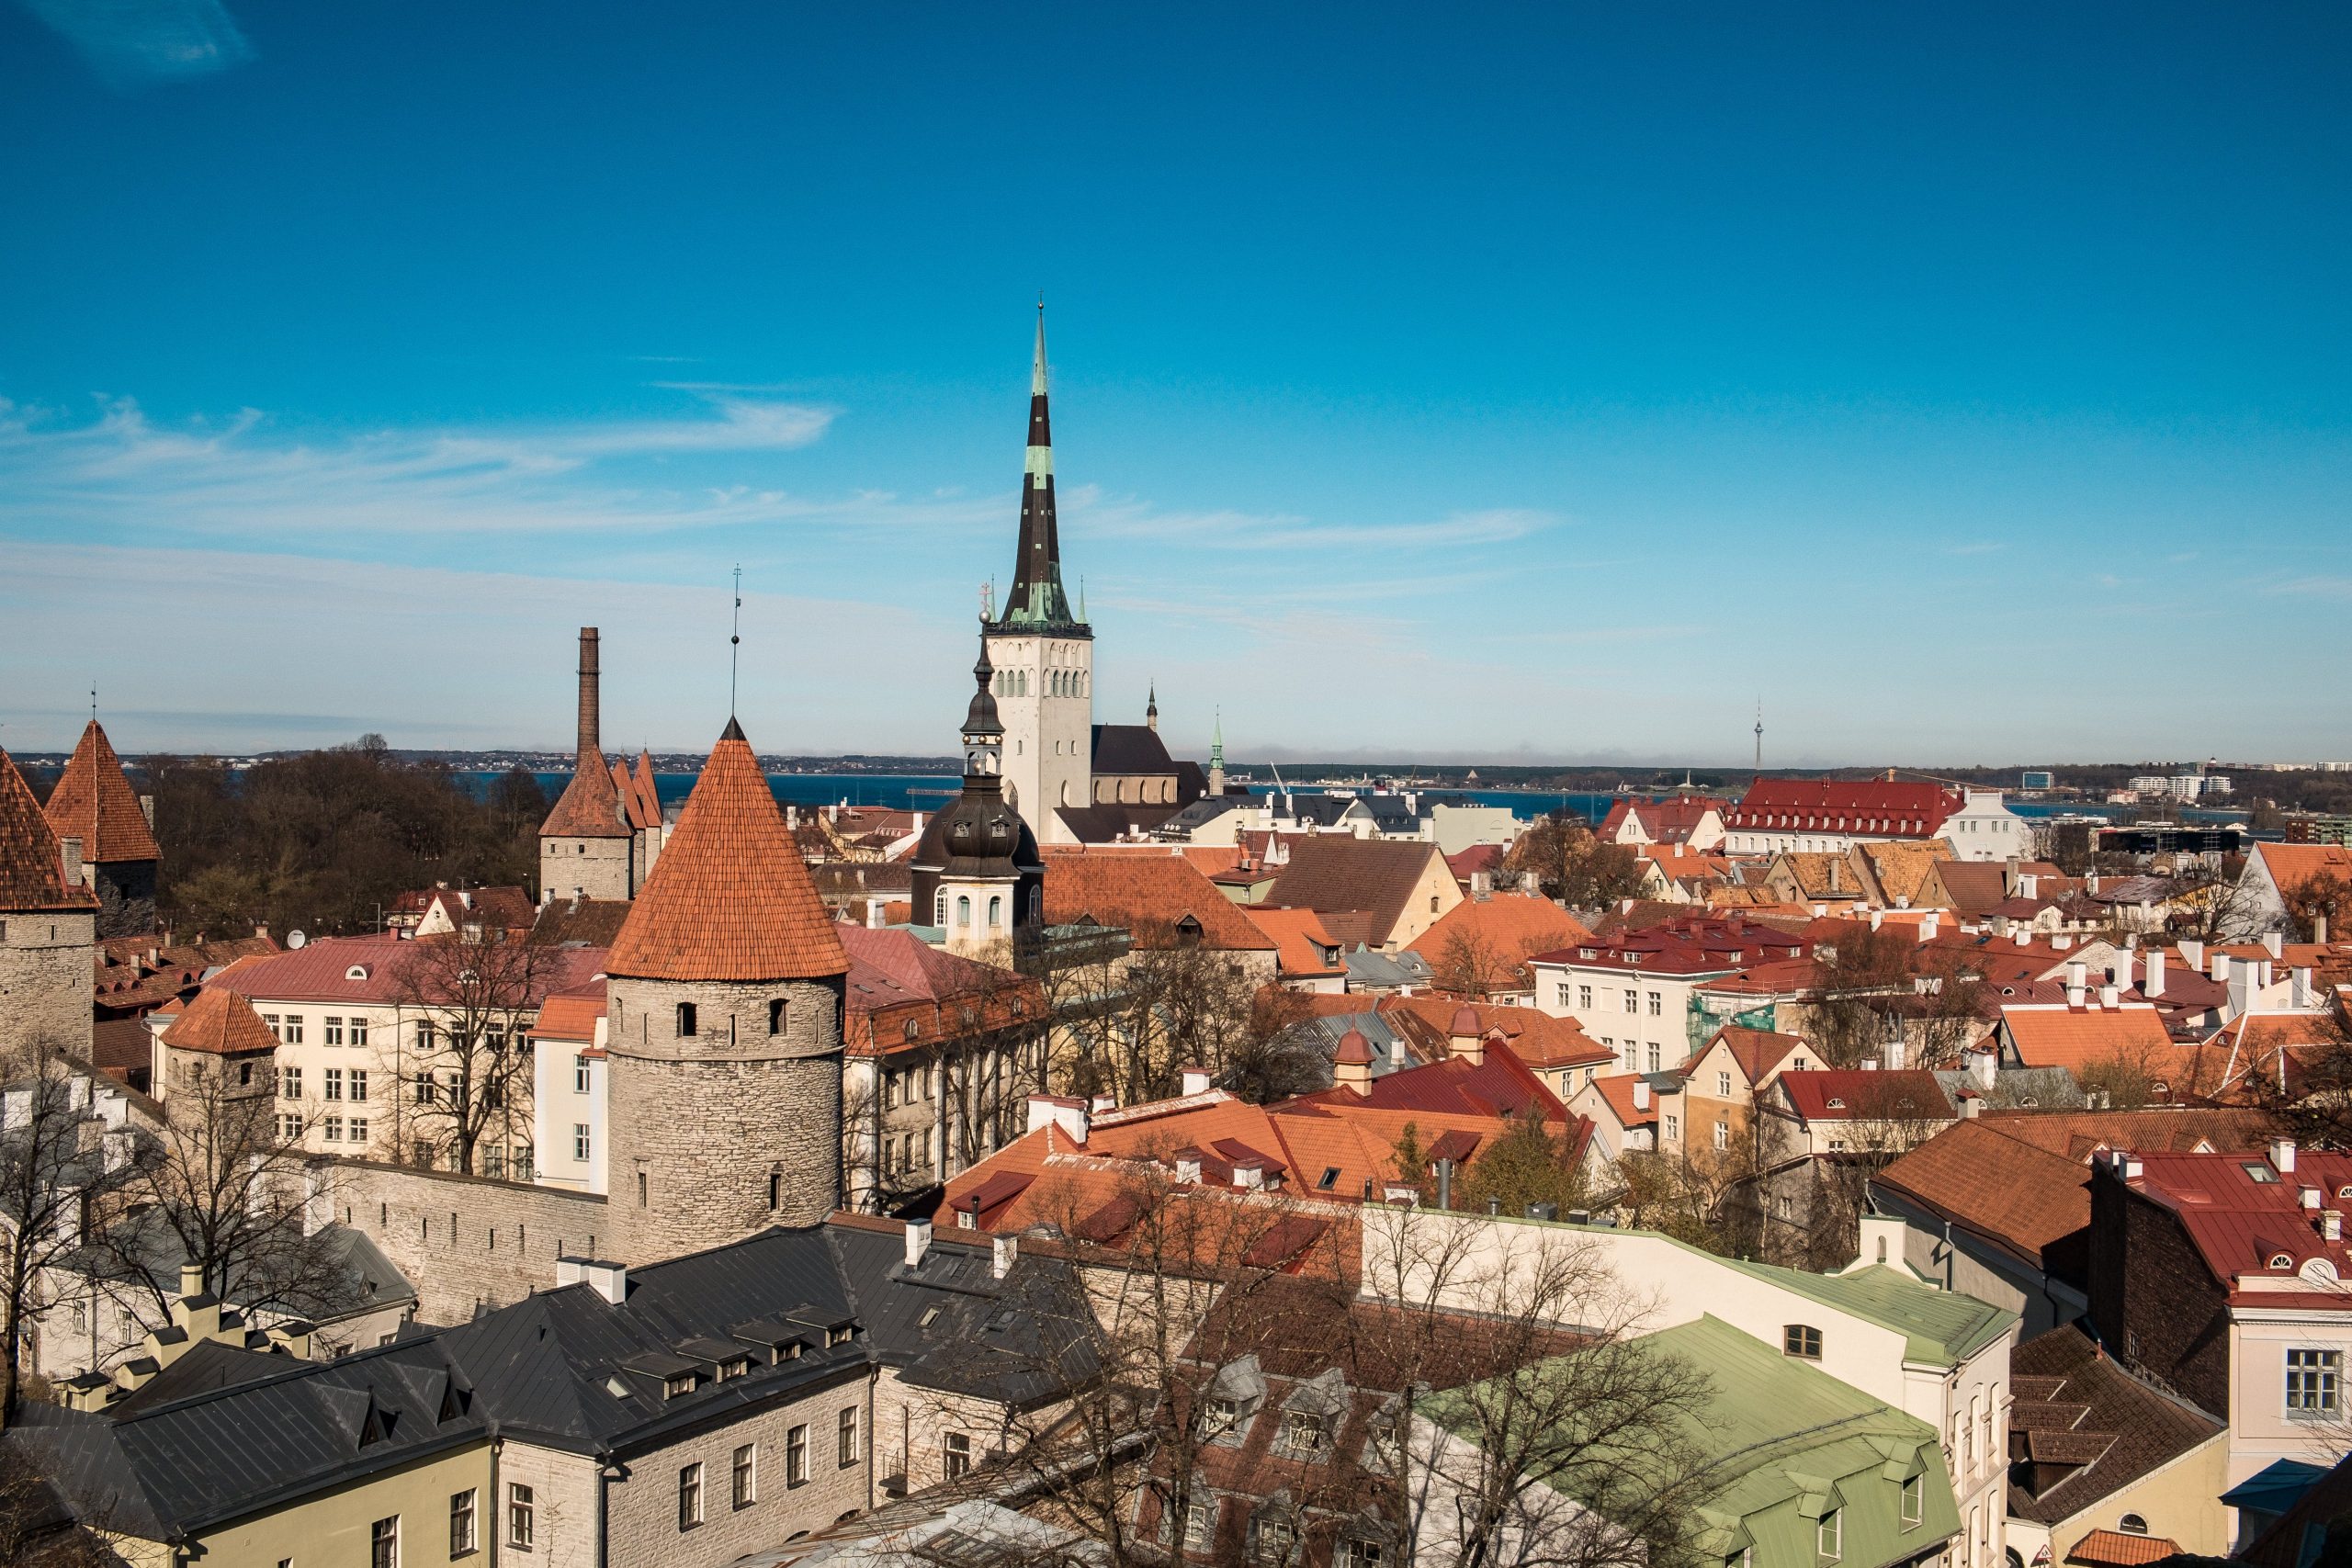 Estonian, Estonia